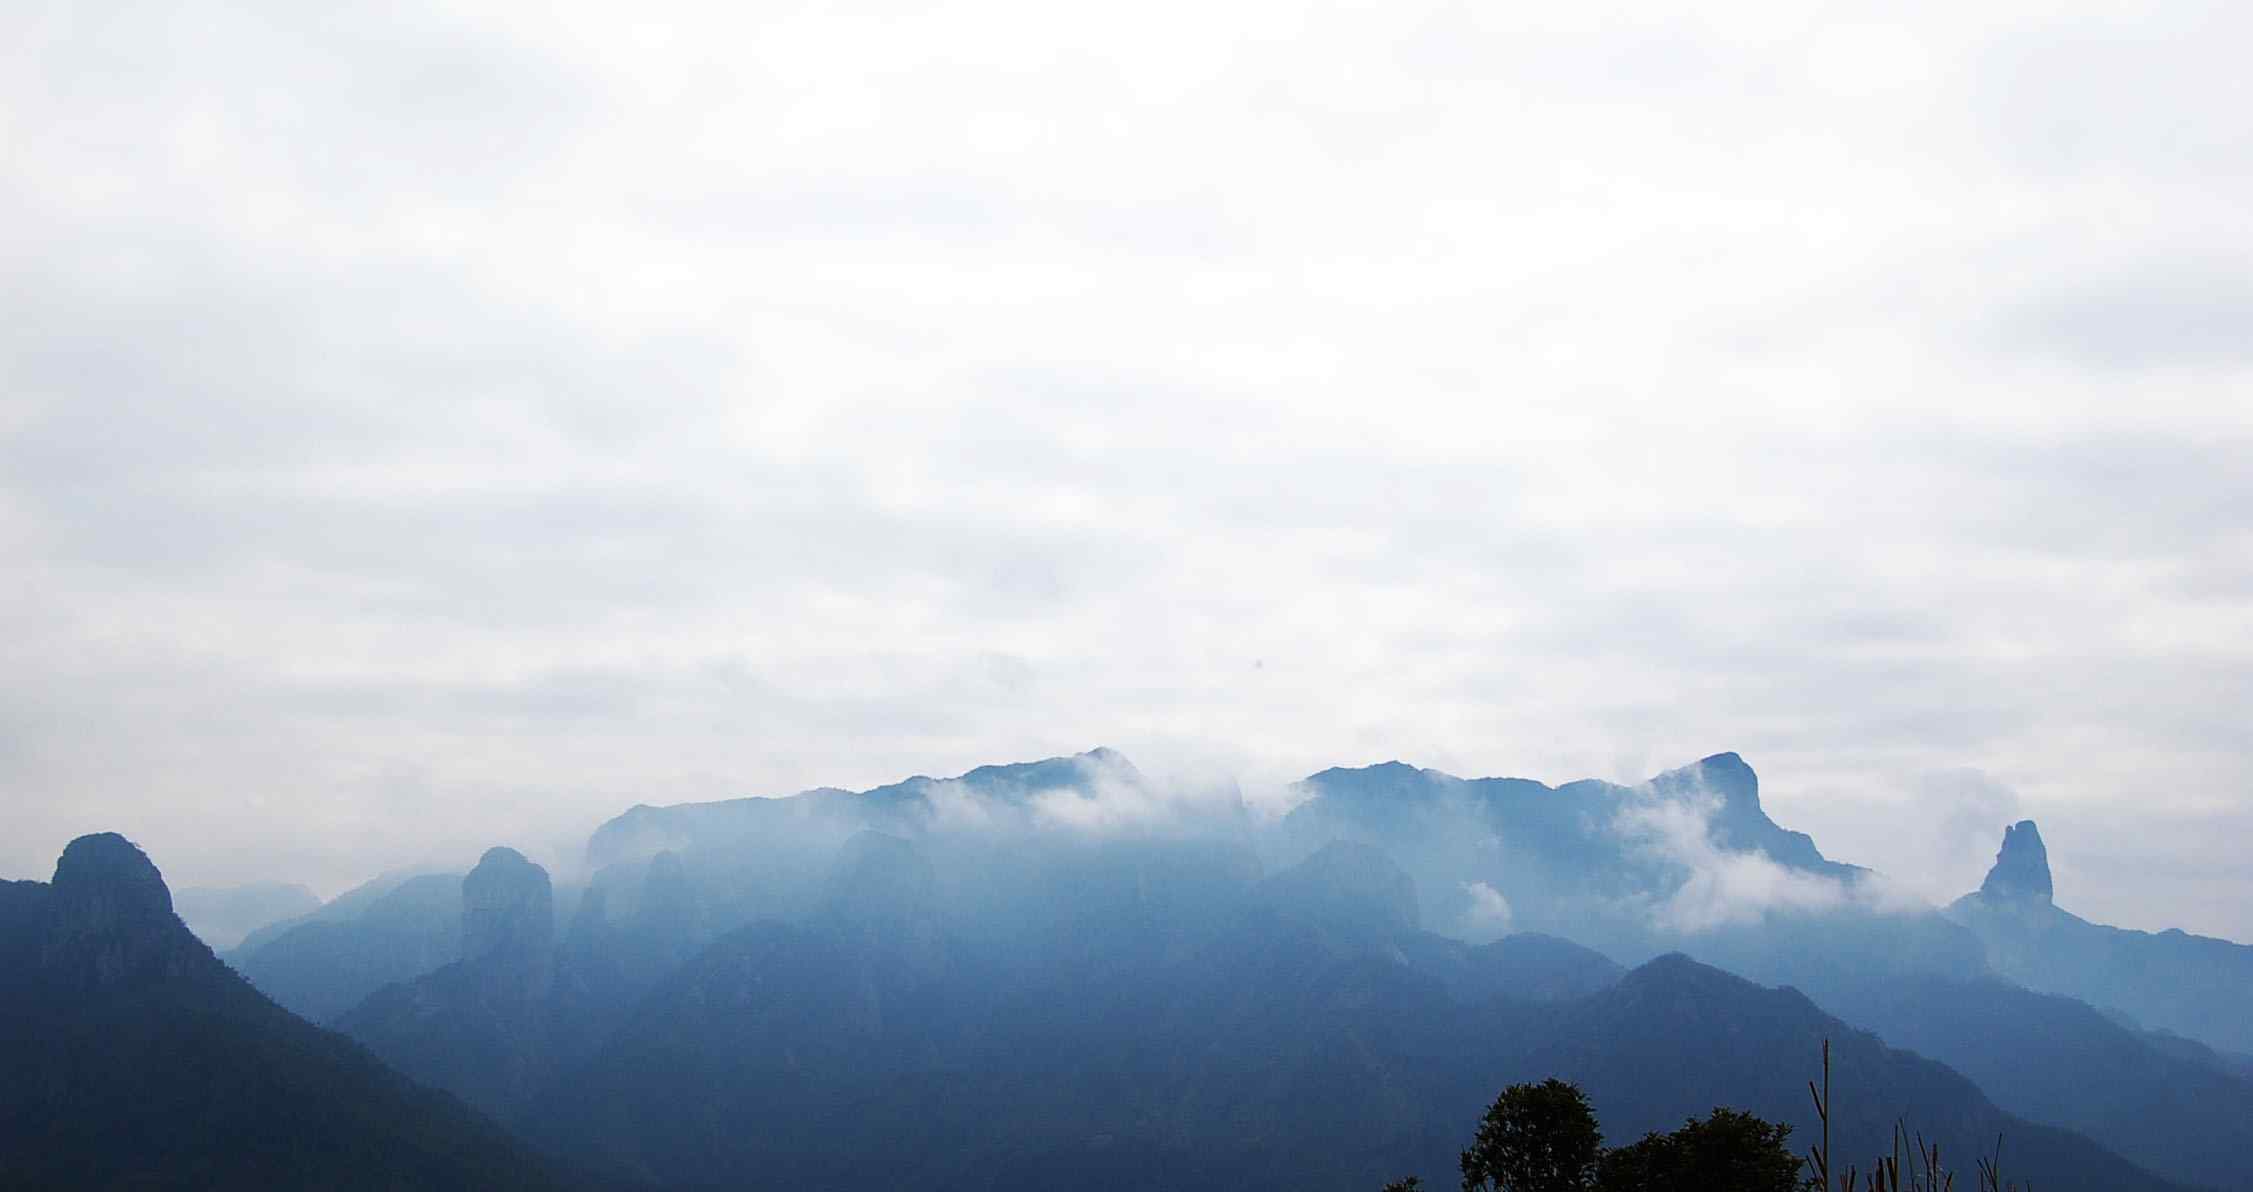 仙居神仙居群山云雾缭绕风景桌面壁纸